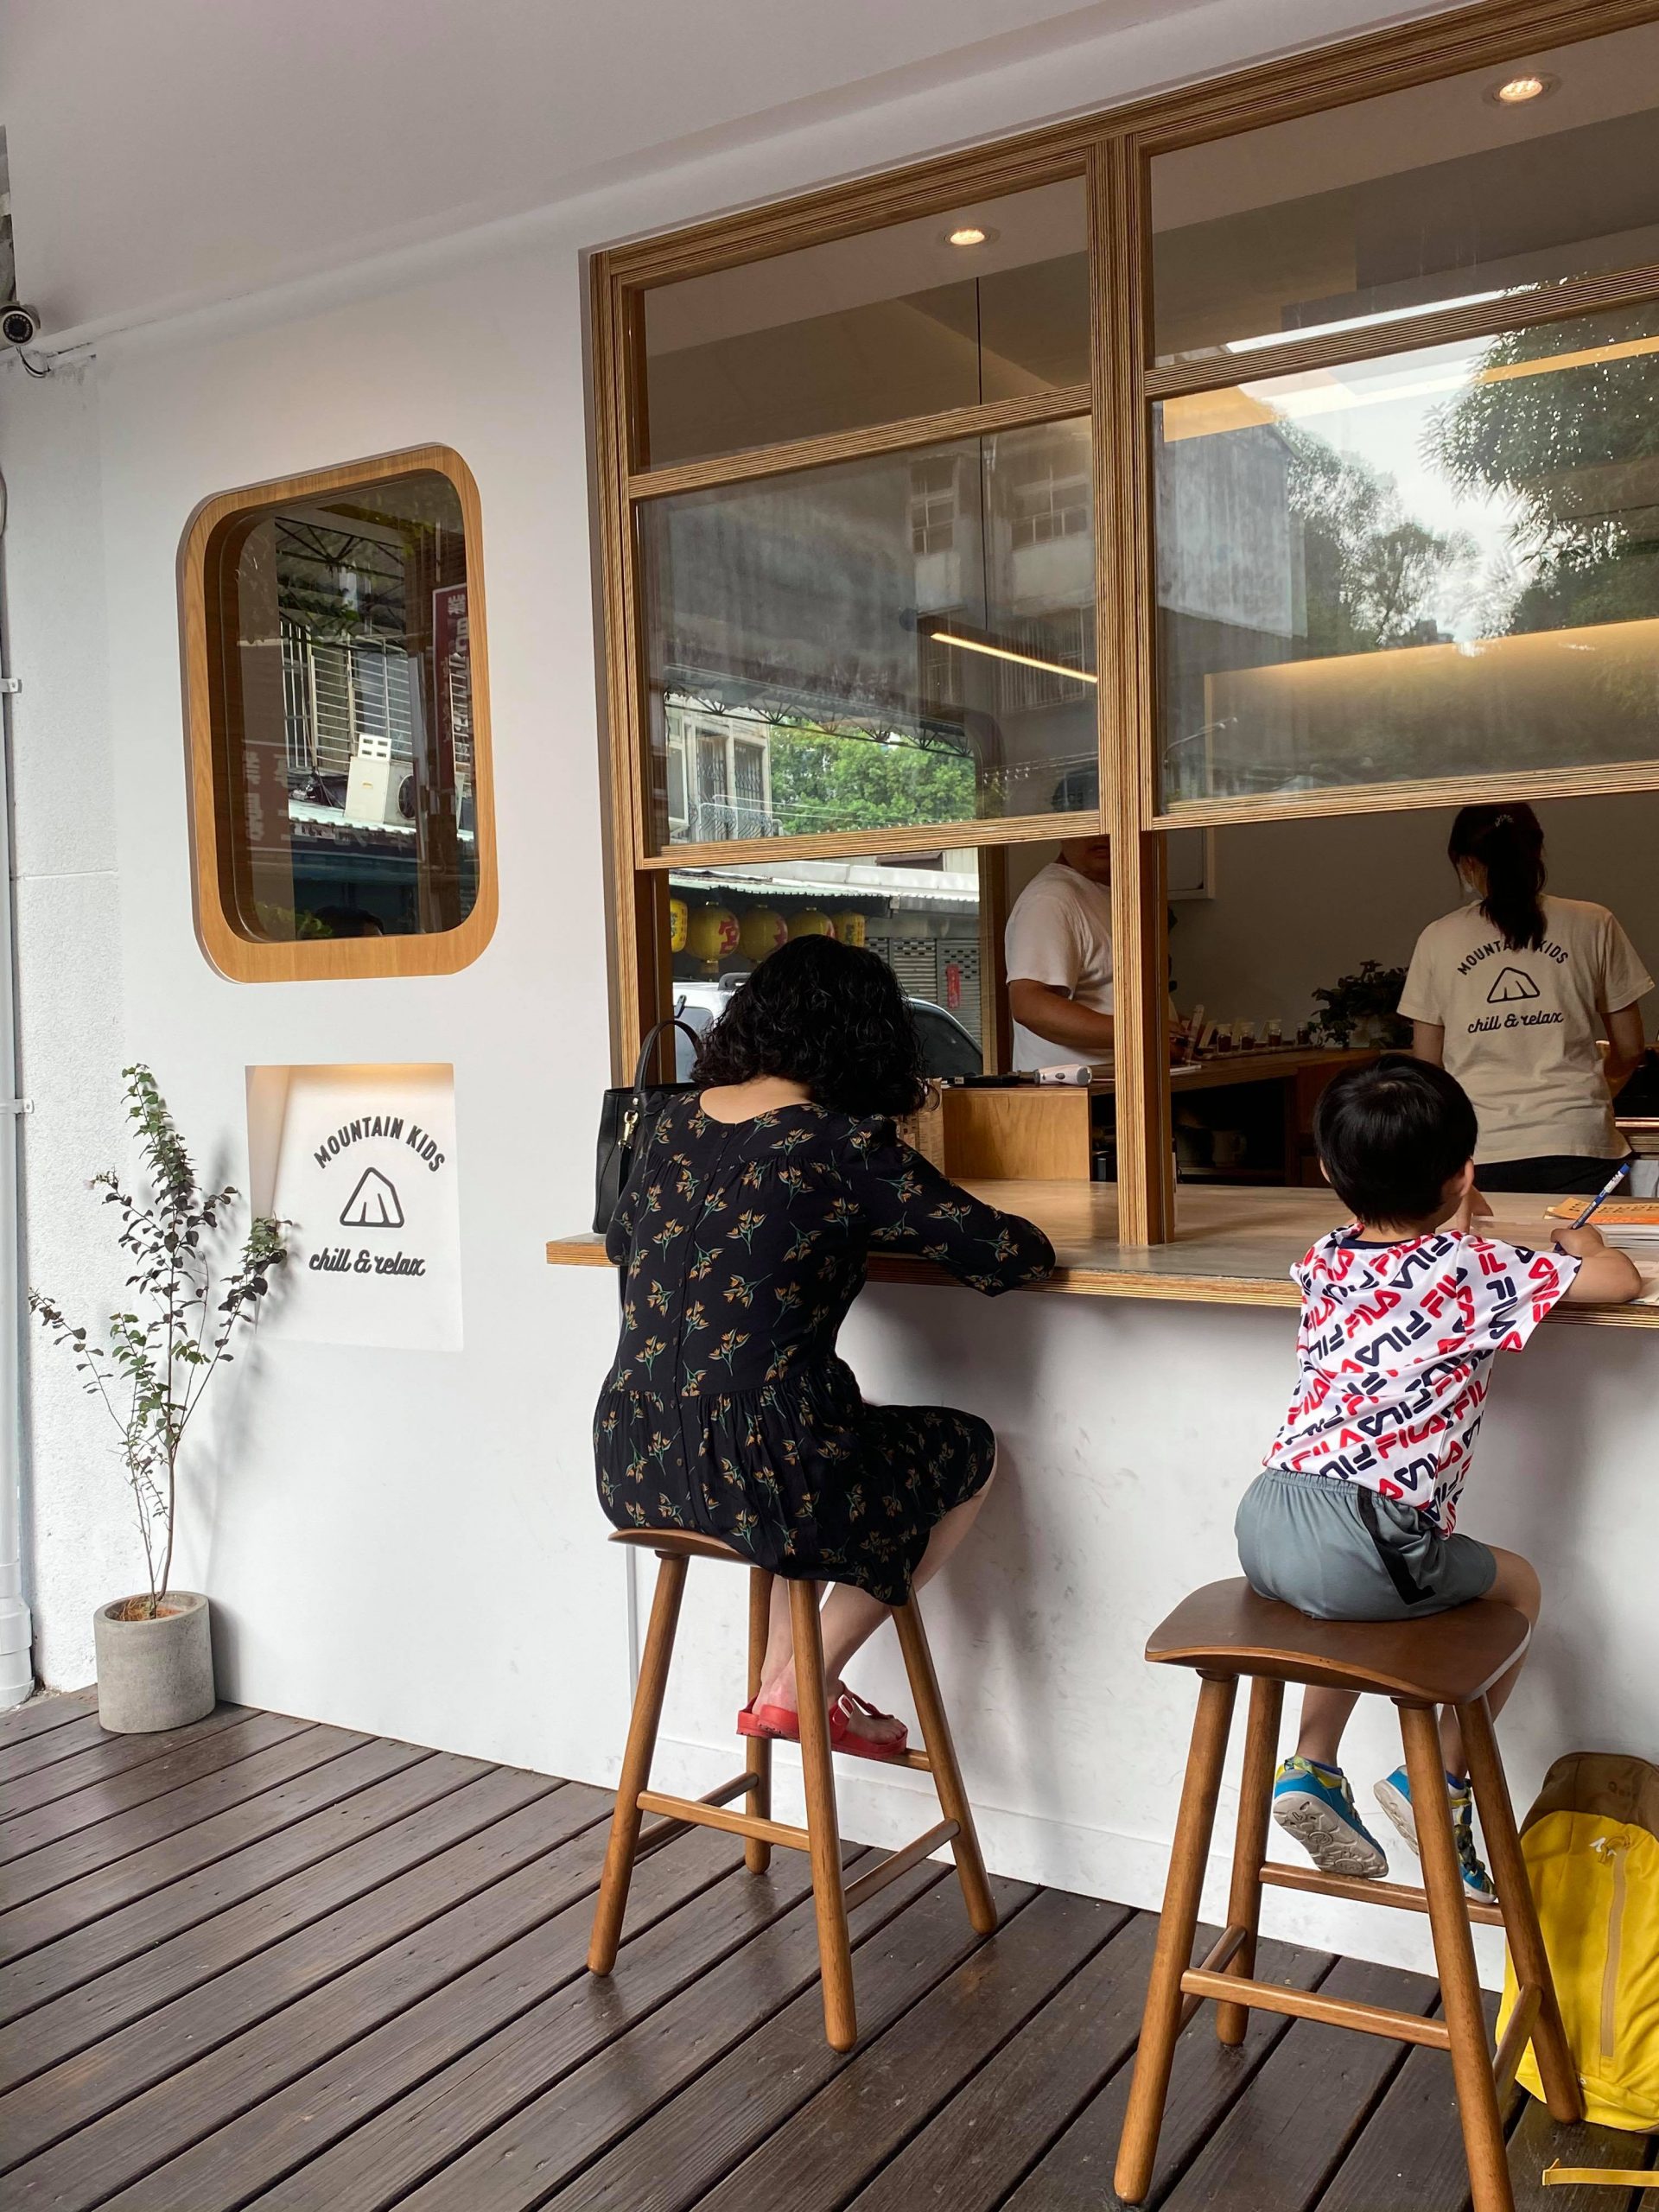 【六張犁】MKCR / Mountain Kids Coffee Roaster 山小孩咖啡二店，咖啡香味迴盪在純白與樸木間的美好